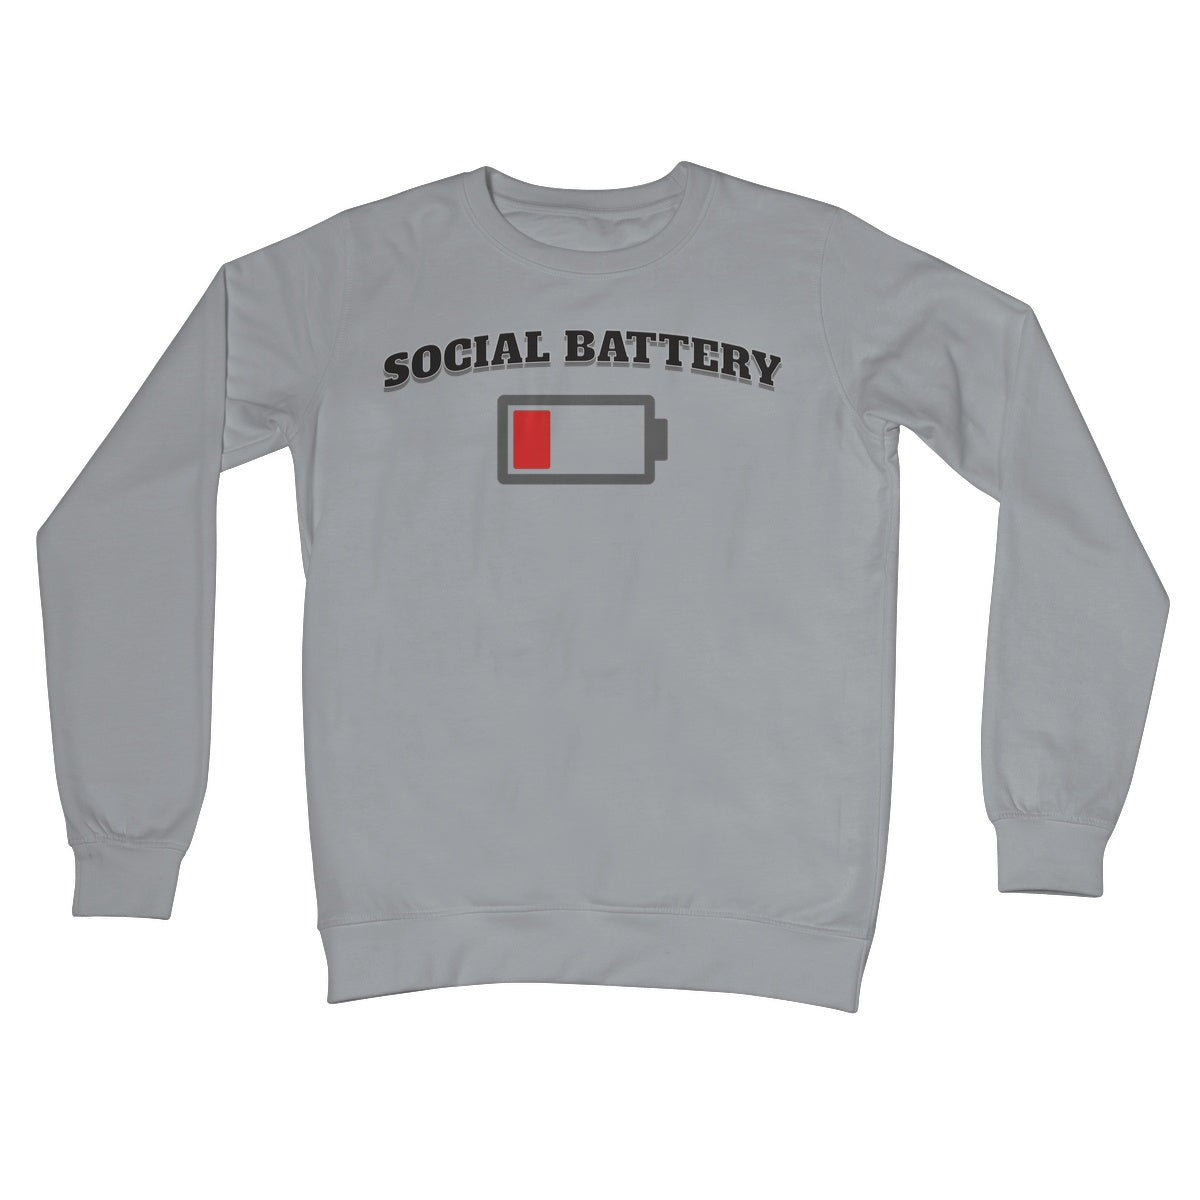 low social battery jumper steel grey